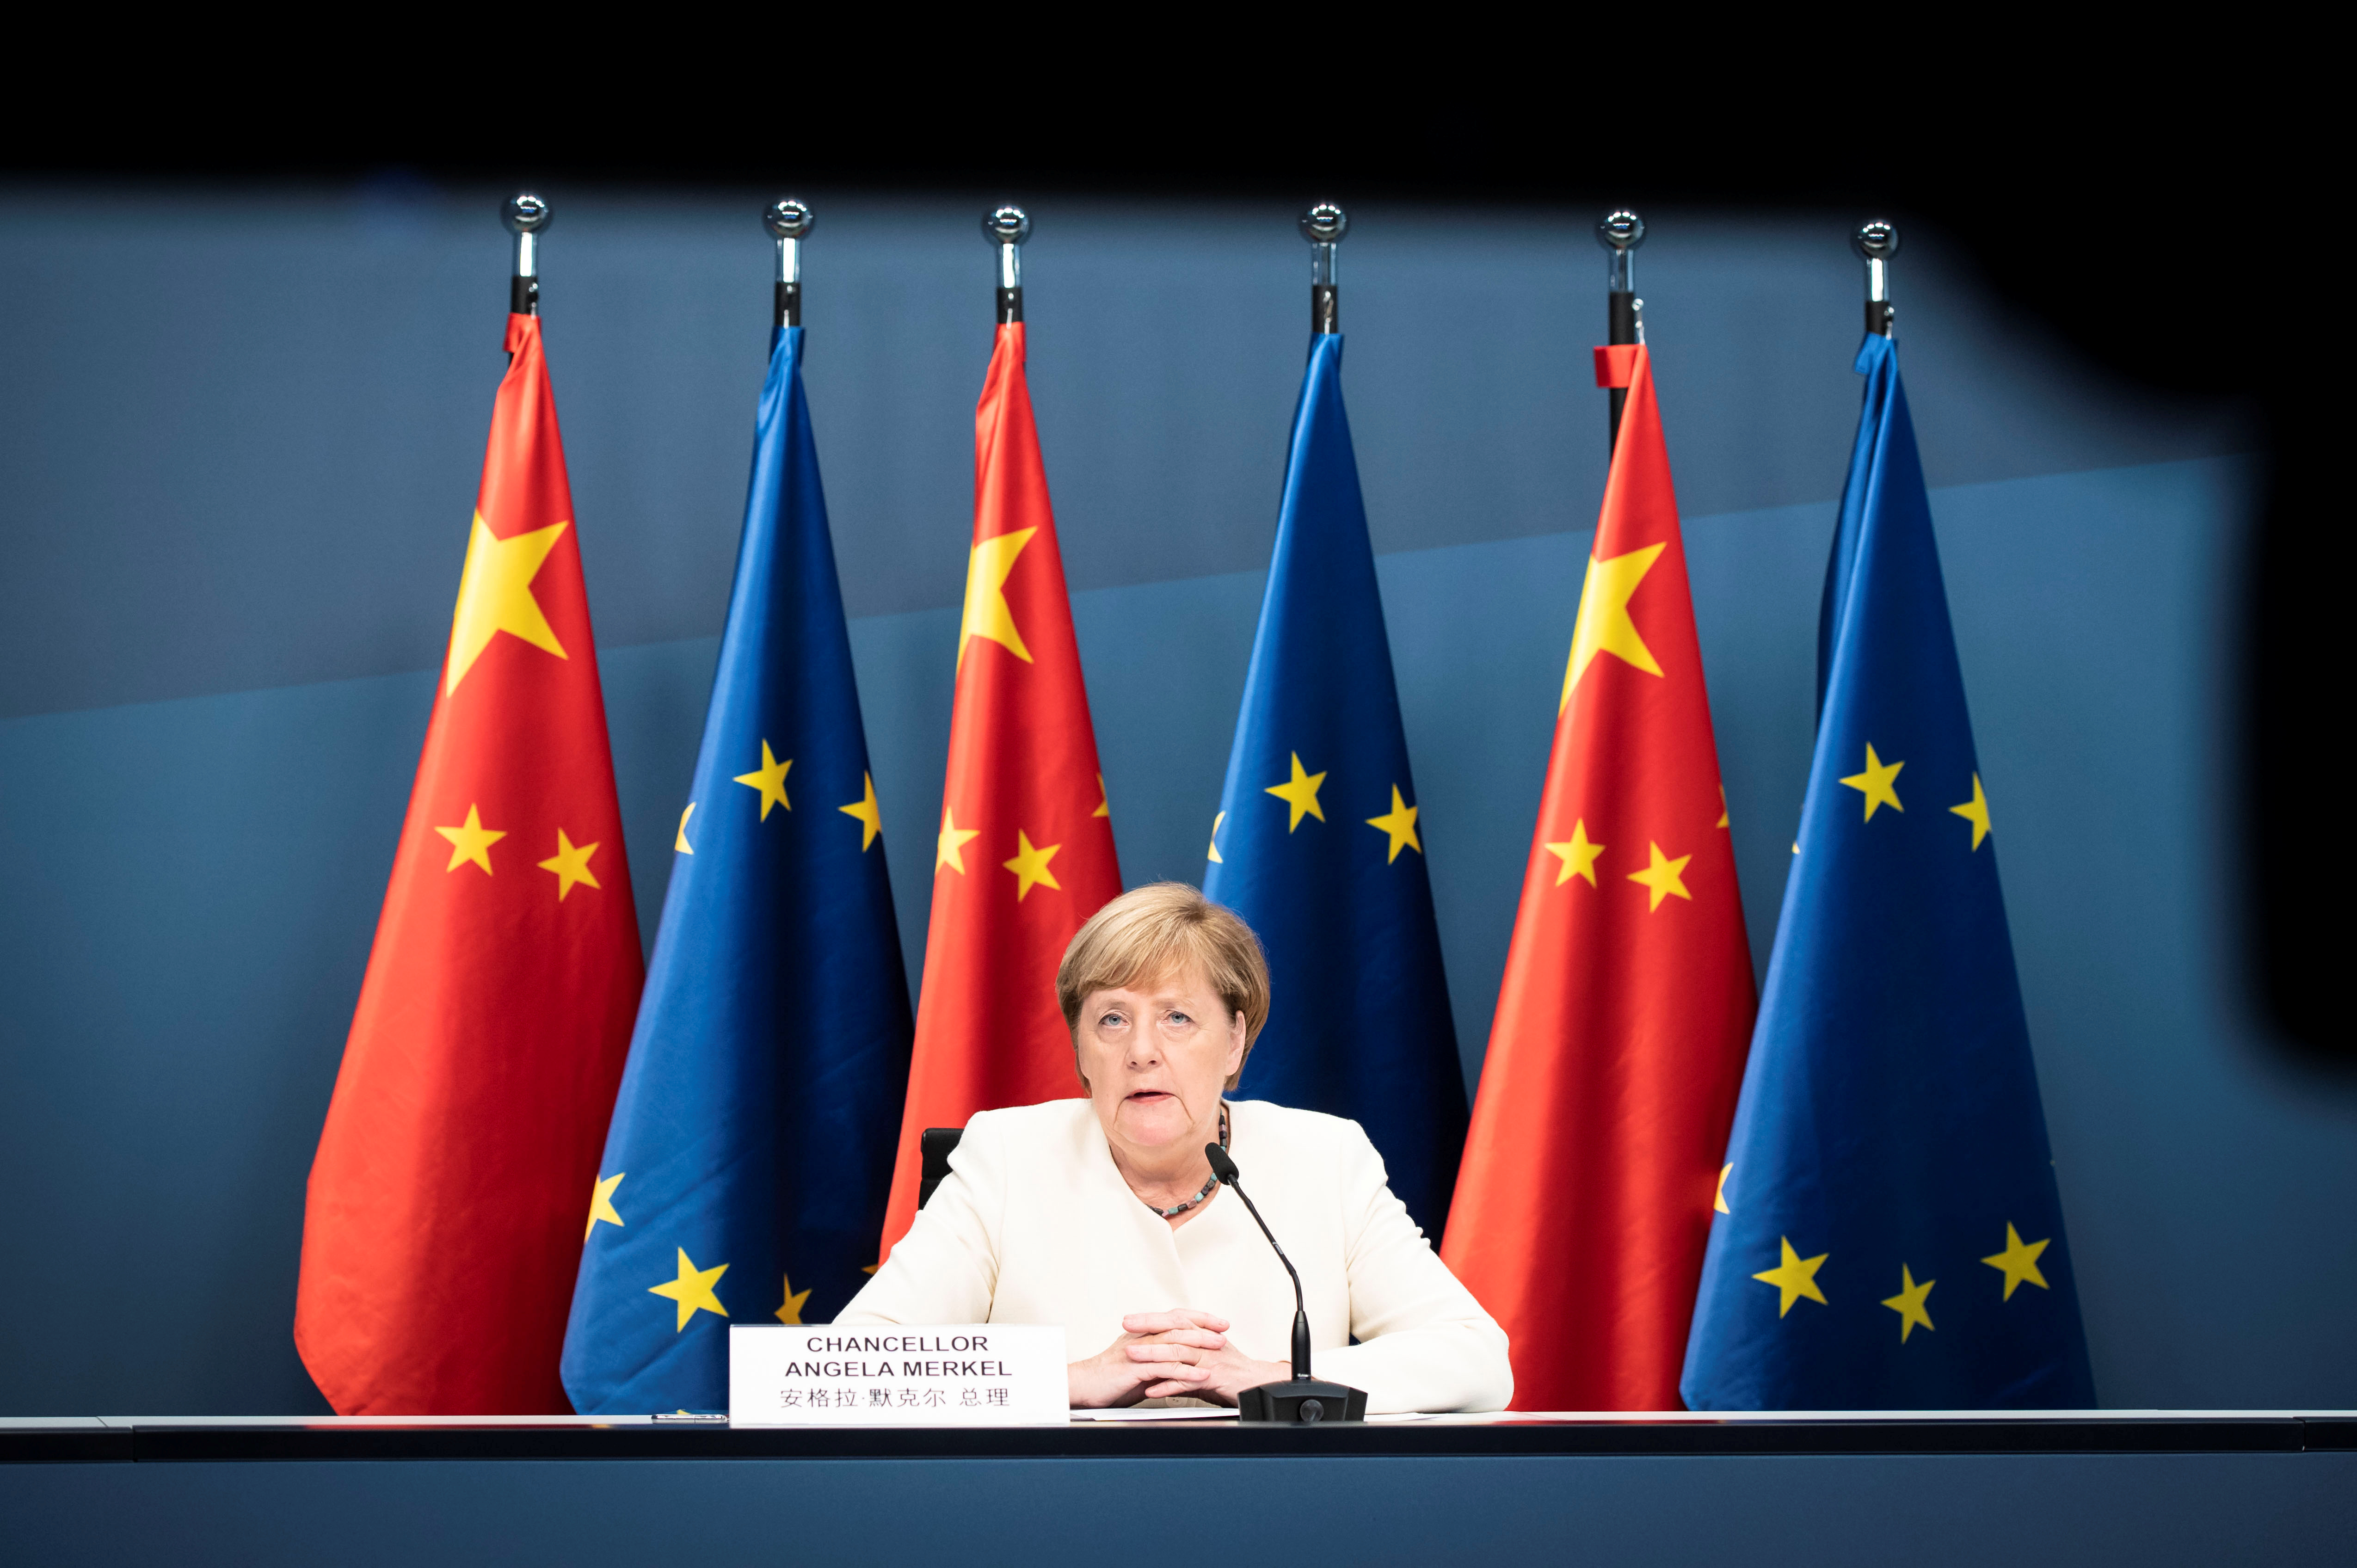 La canciller alemana, Angela Merkel, también participó de la conferencia con el presidente chino Xi Jinping (Bundesregierung/Steffen Kugler/Handout via REUTERS)